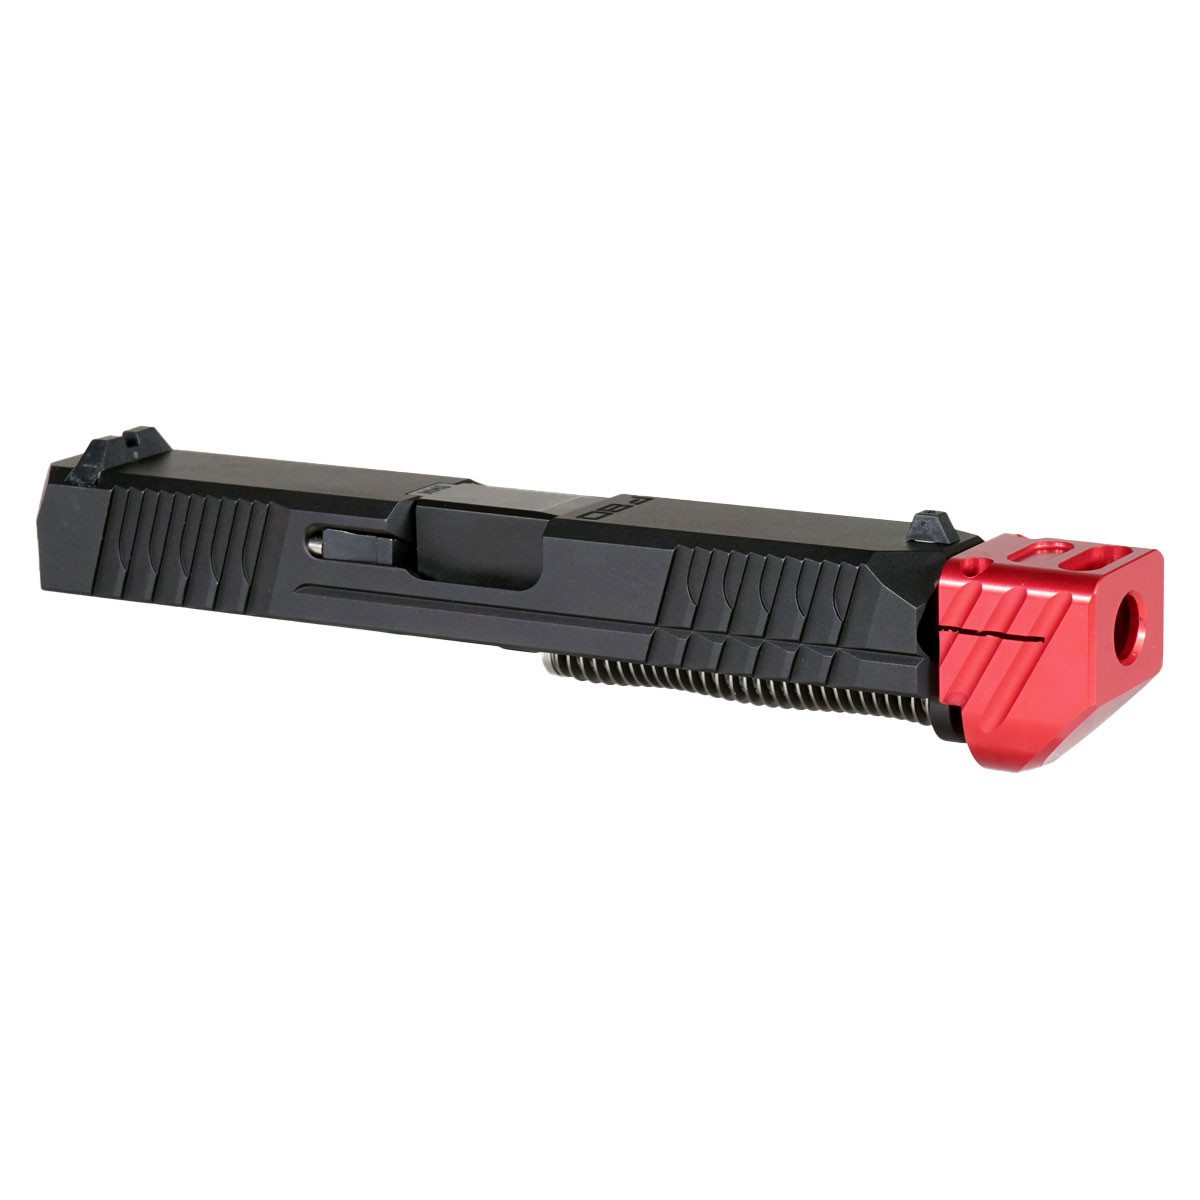 DD 'Paracausal V3 w/ Red Compensator' 9mm Complete Slide Kit - Glock 19 Gen 1-3 Compatible